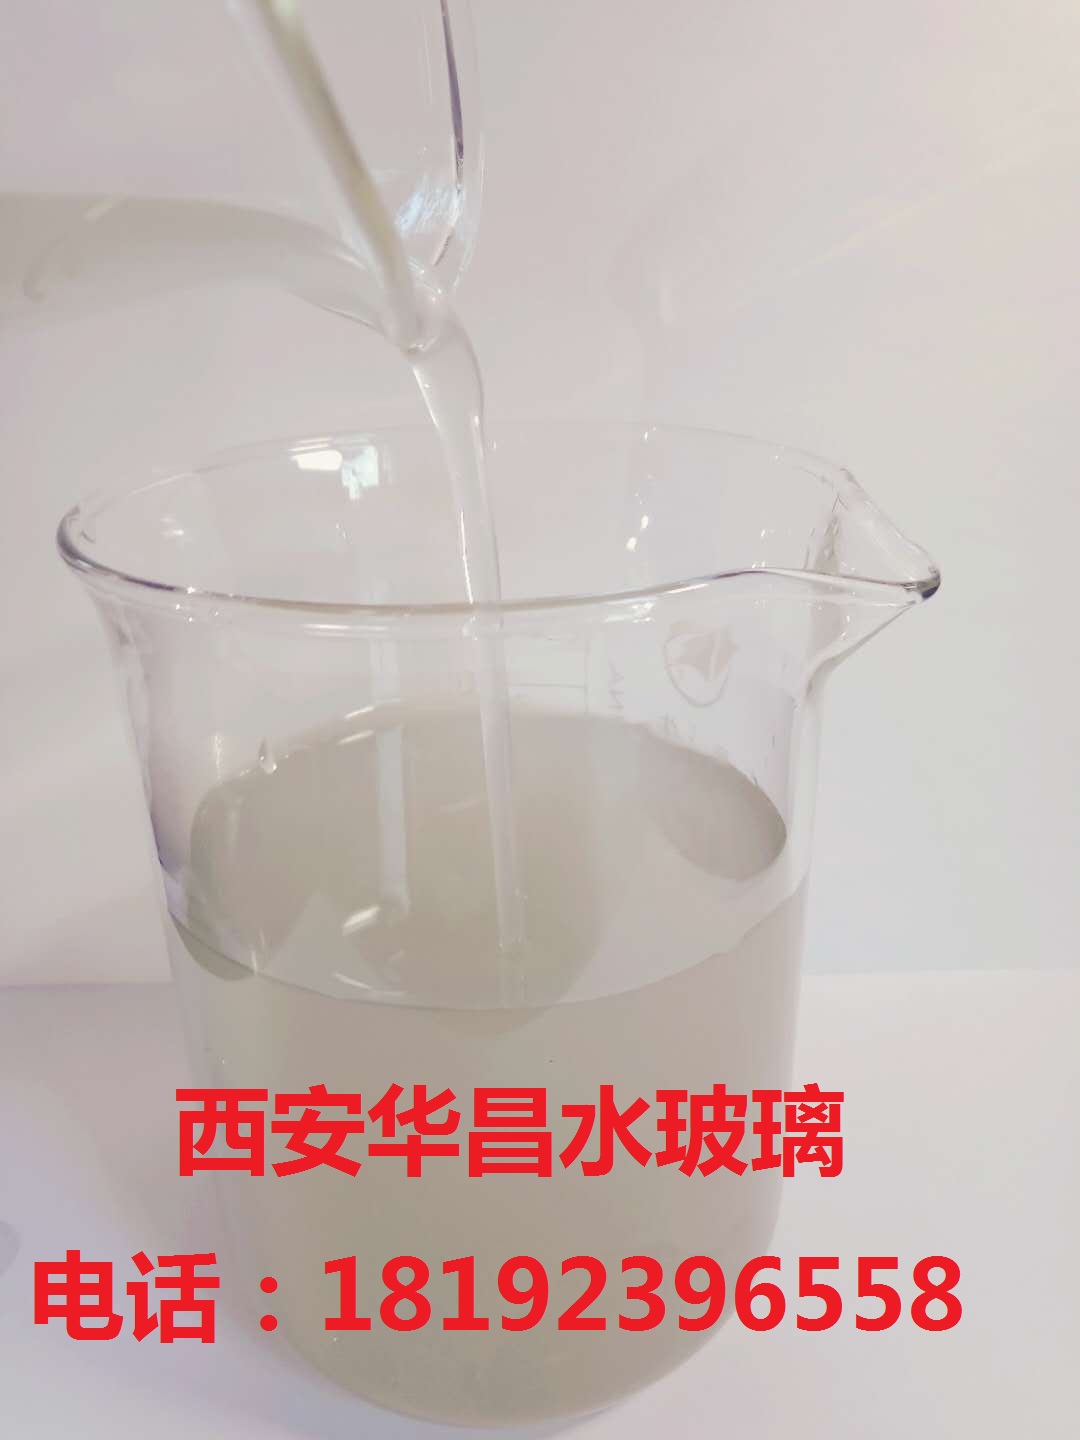 西安华昌水玻璃有限公司